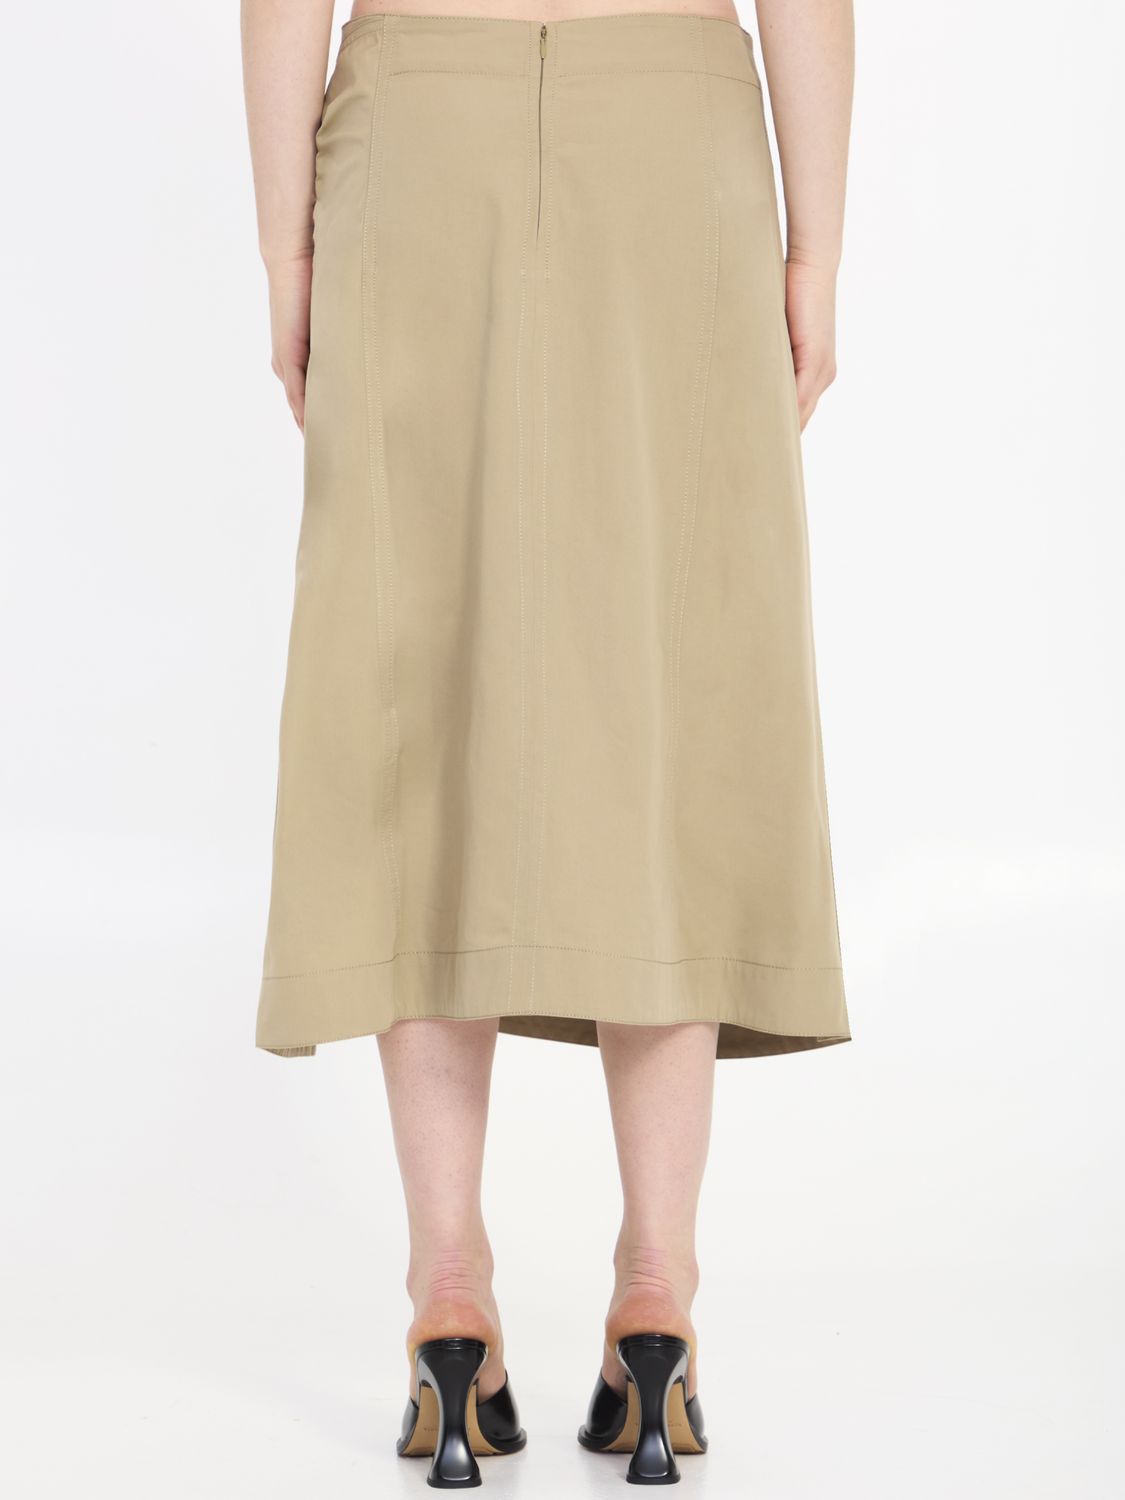 BOTTEGA VENETA Tan Cotton Midi Skirt with Front Knot Detail for Women